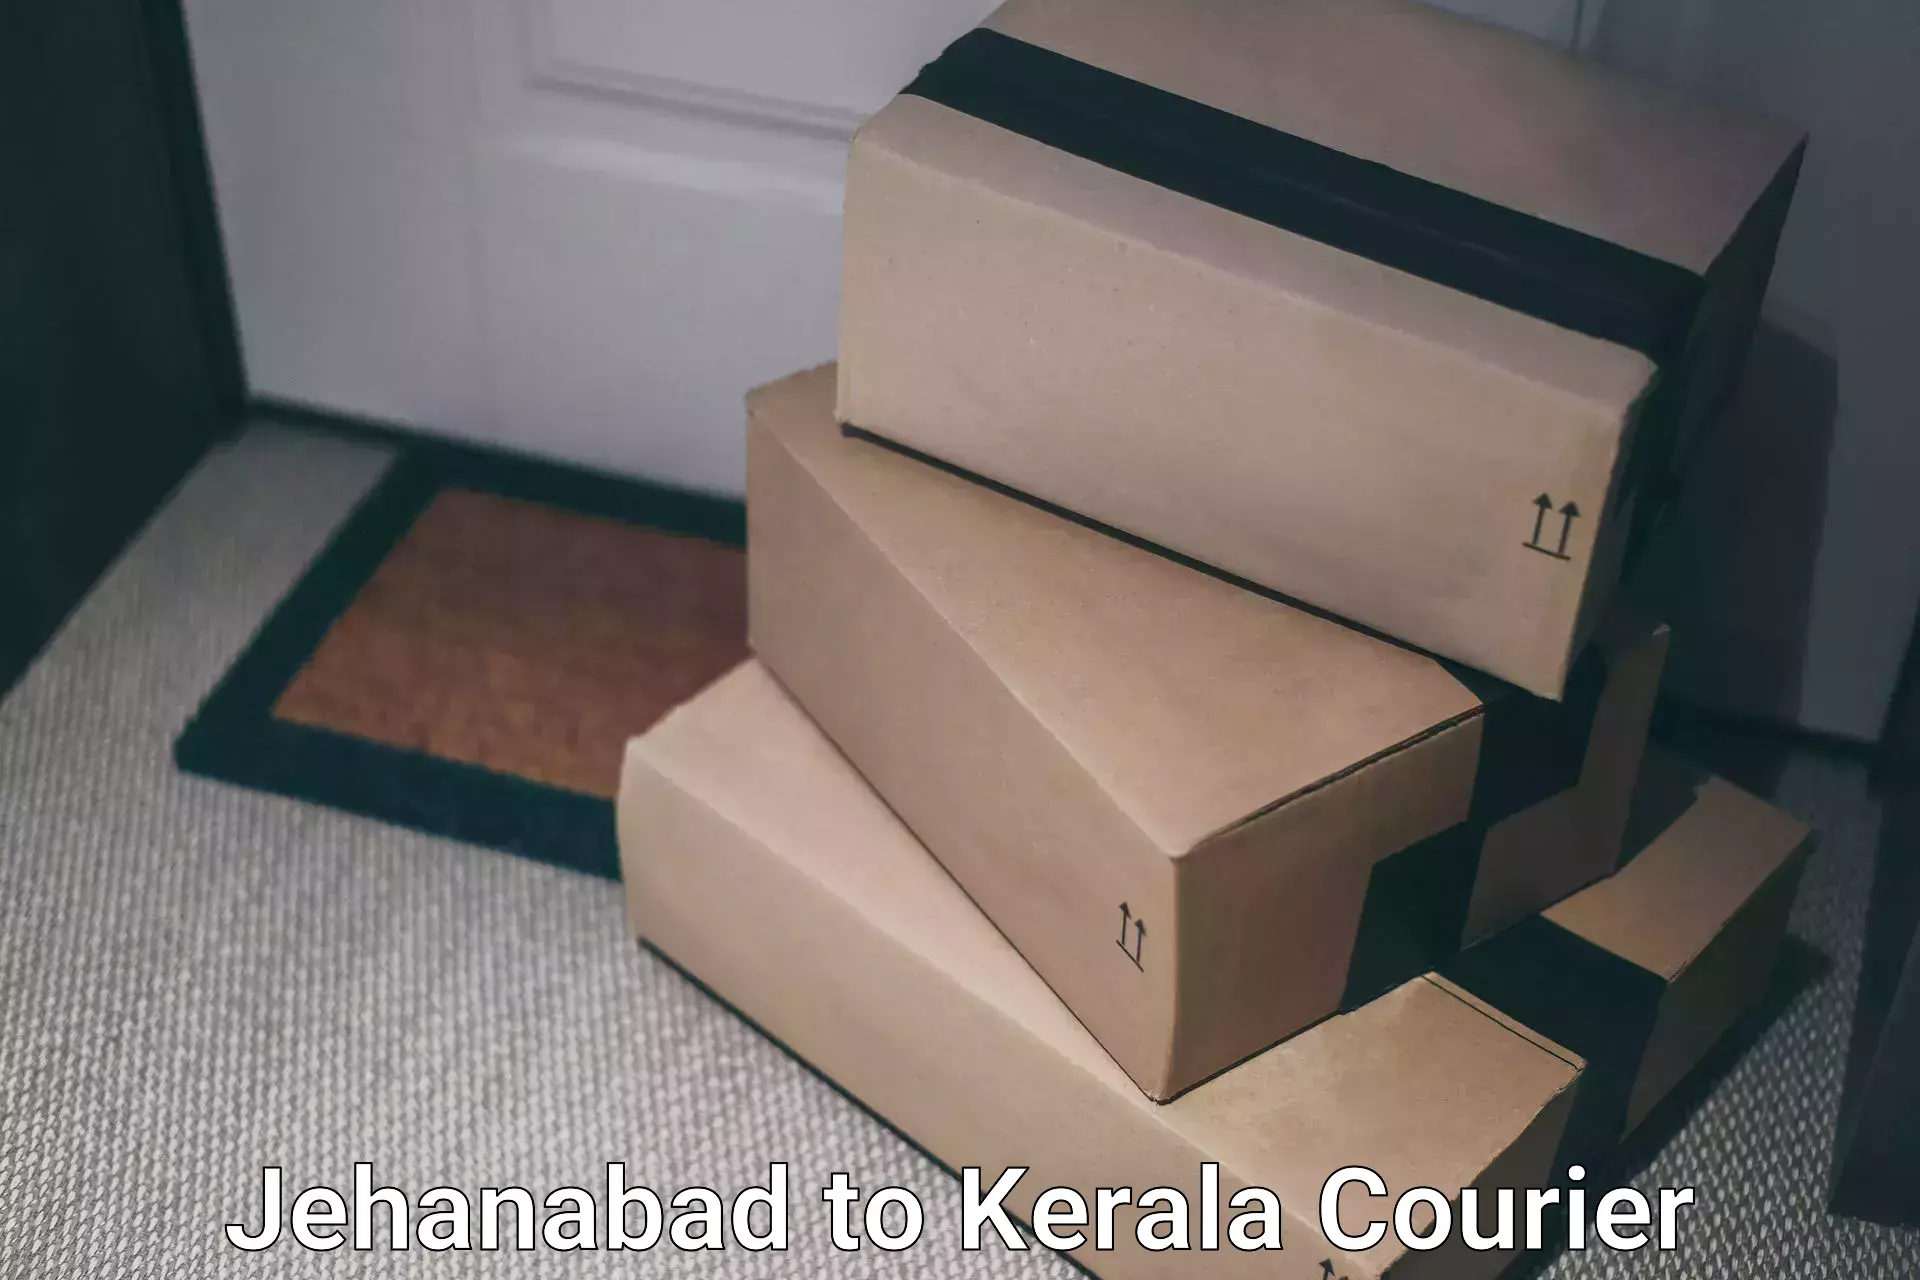 Reliable package handling Jehanabad to Thiruvananthapuram